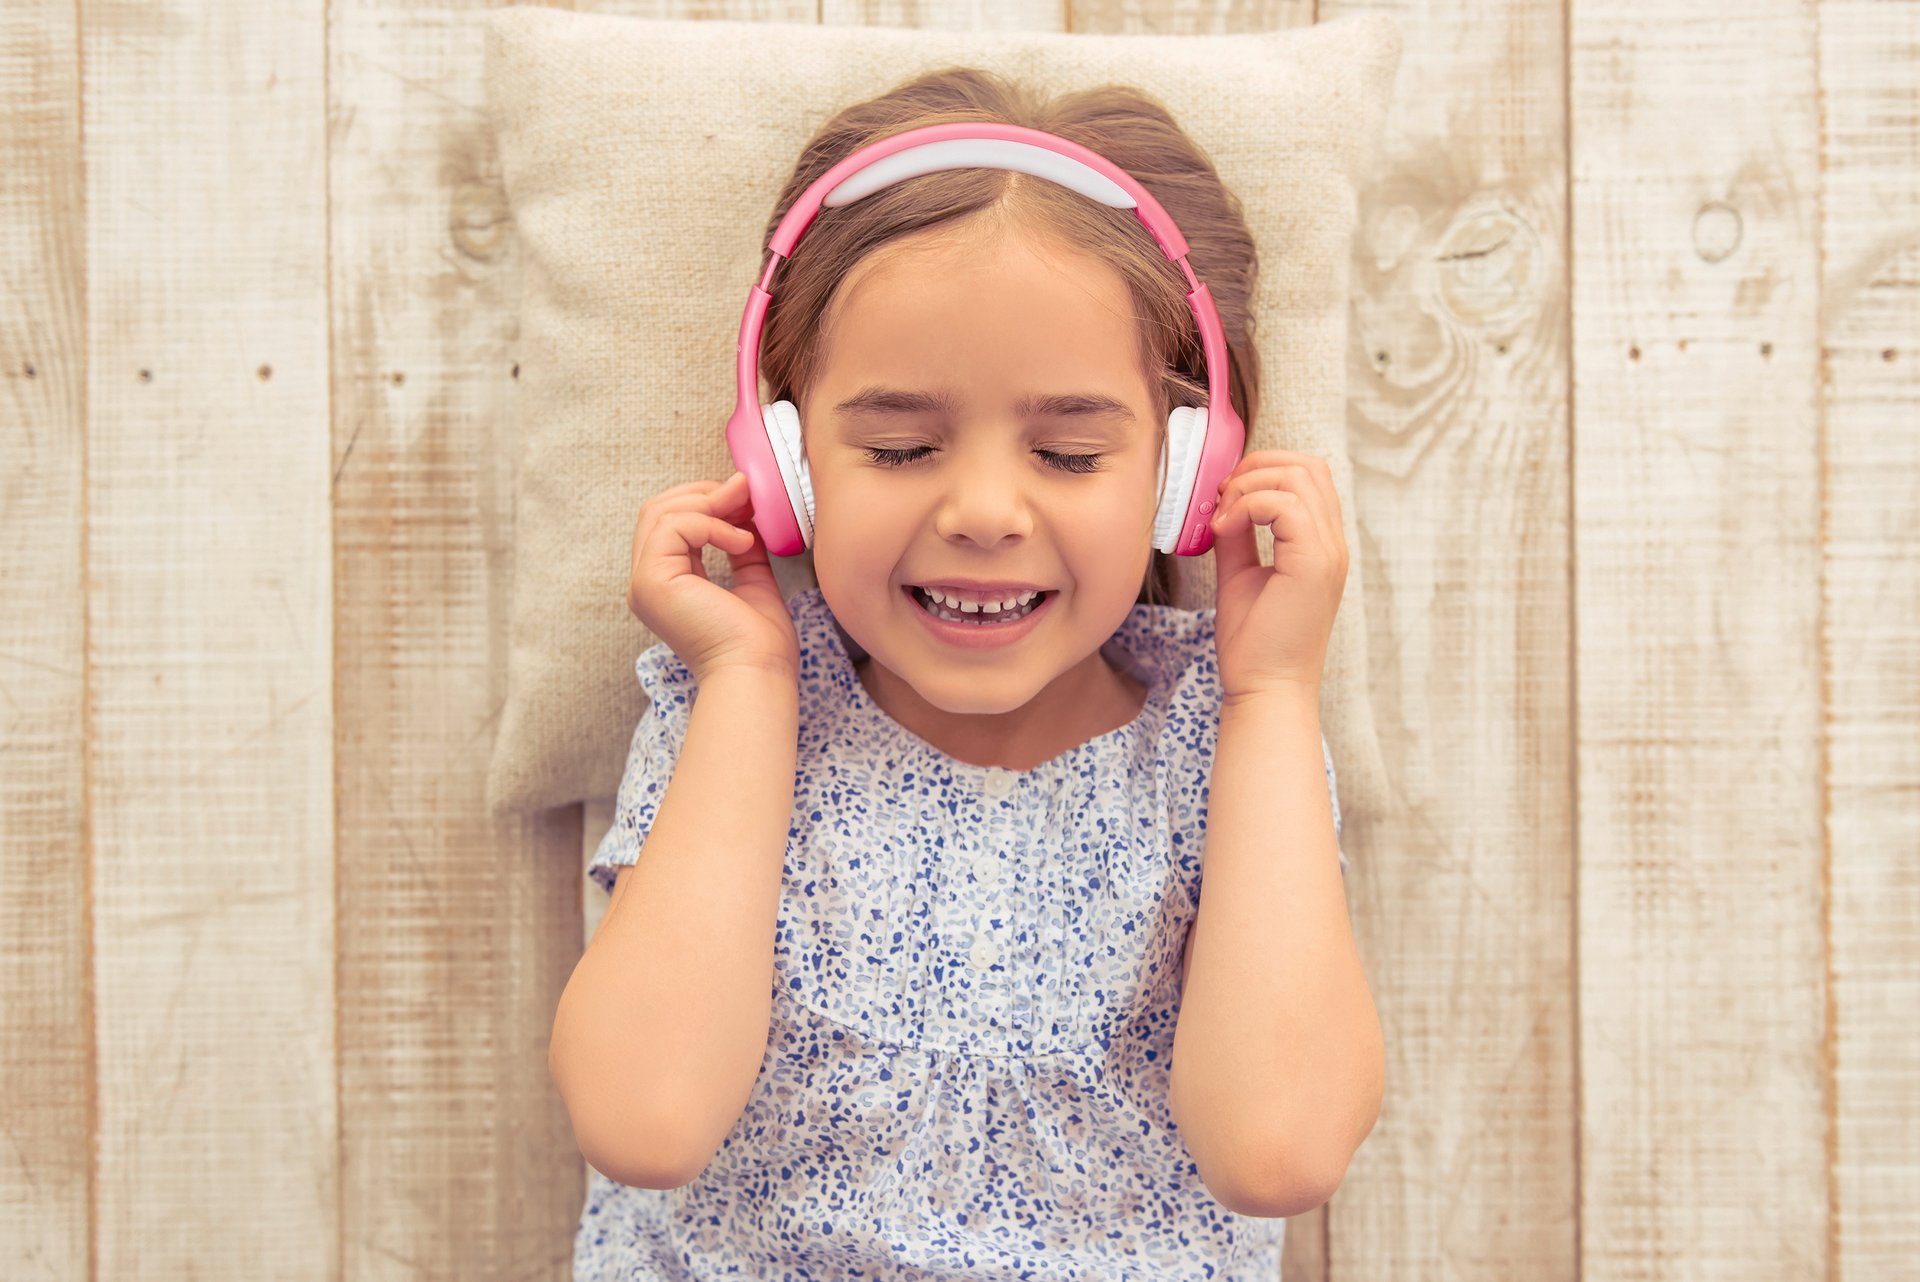 HPB-110 Sticker Kinderkopfhörer Pink Lenco mit Over-Ear-Kopfhörer